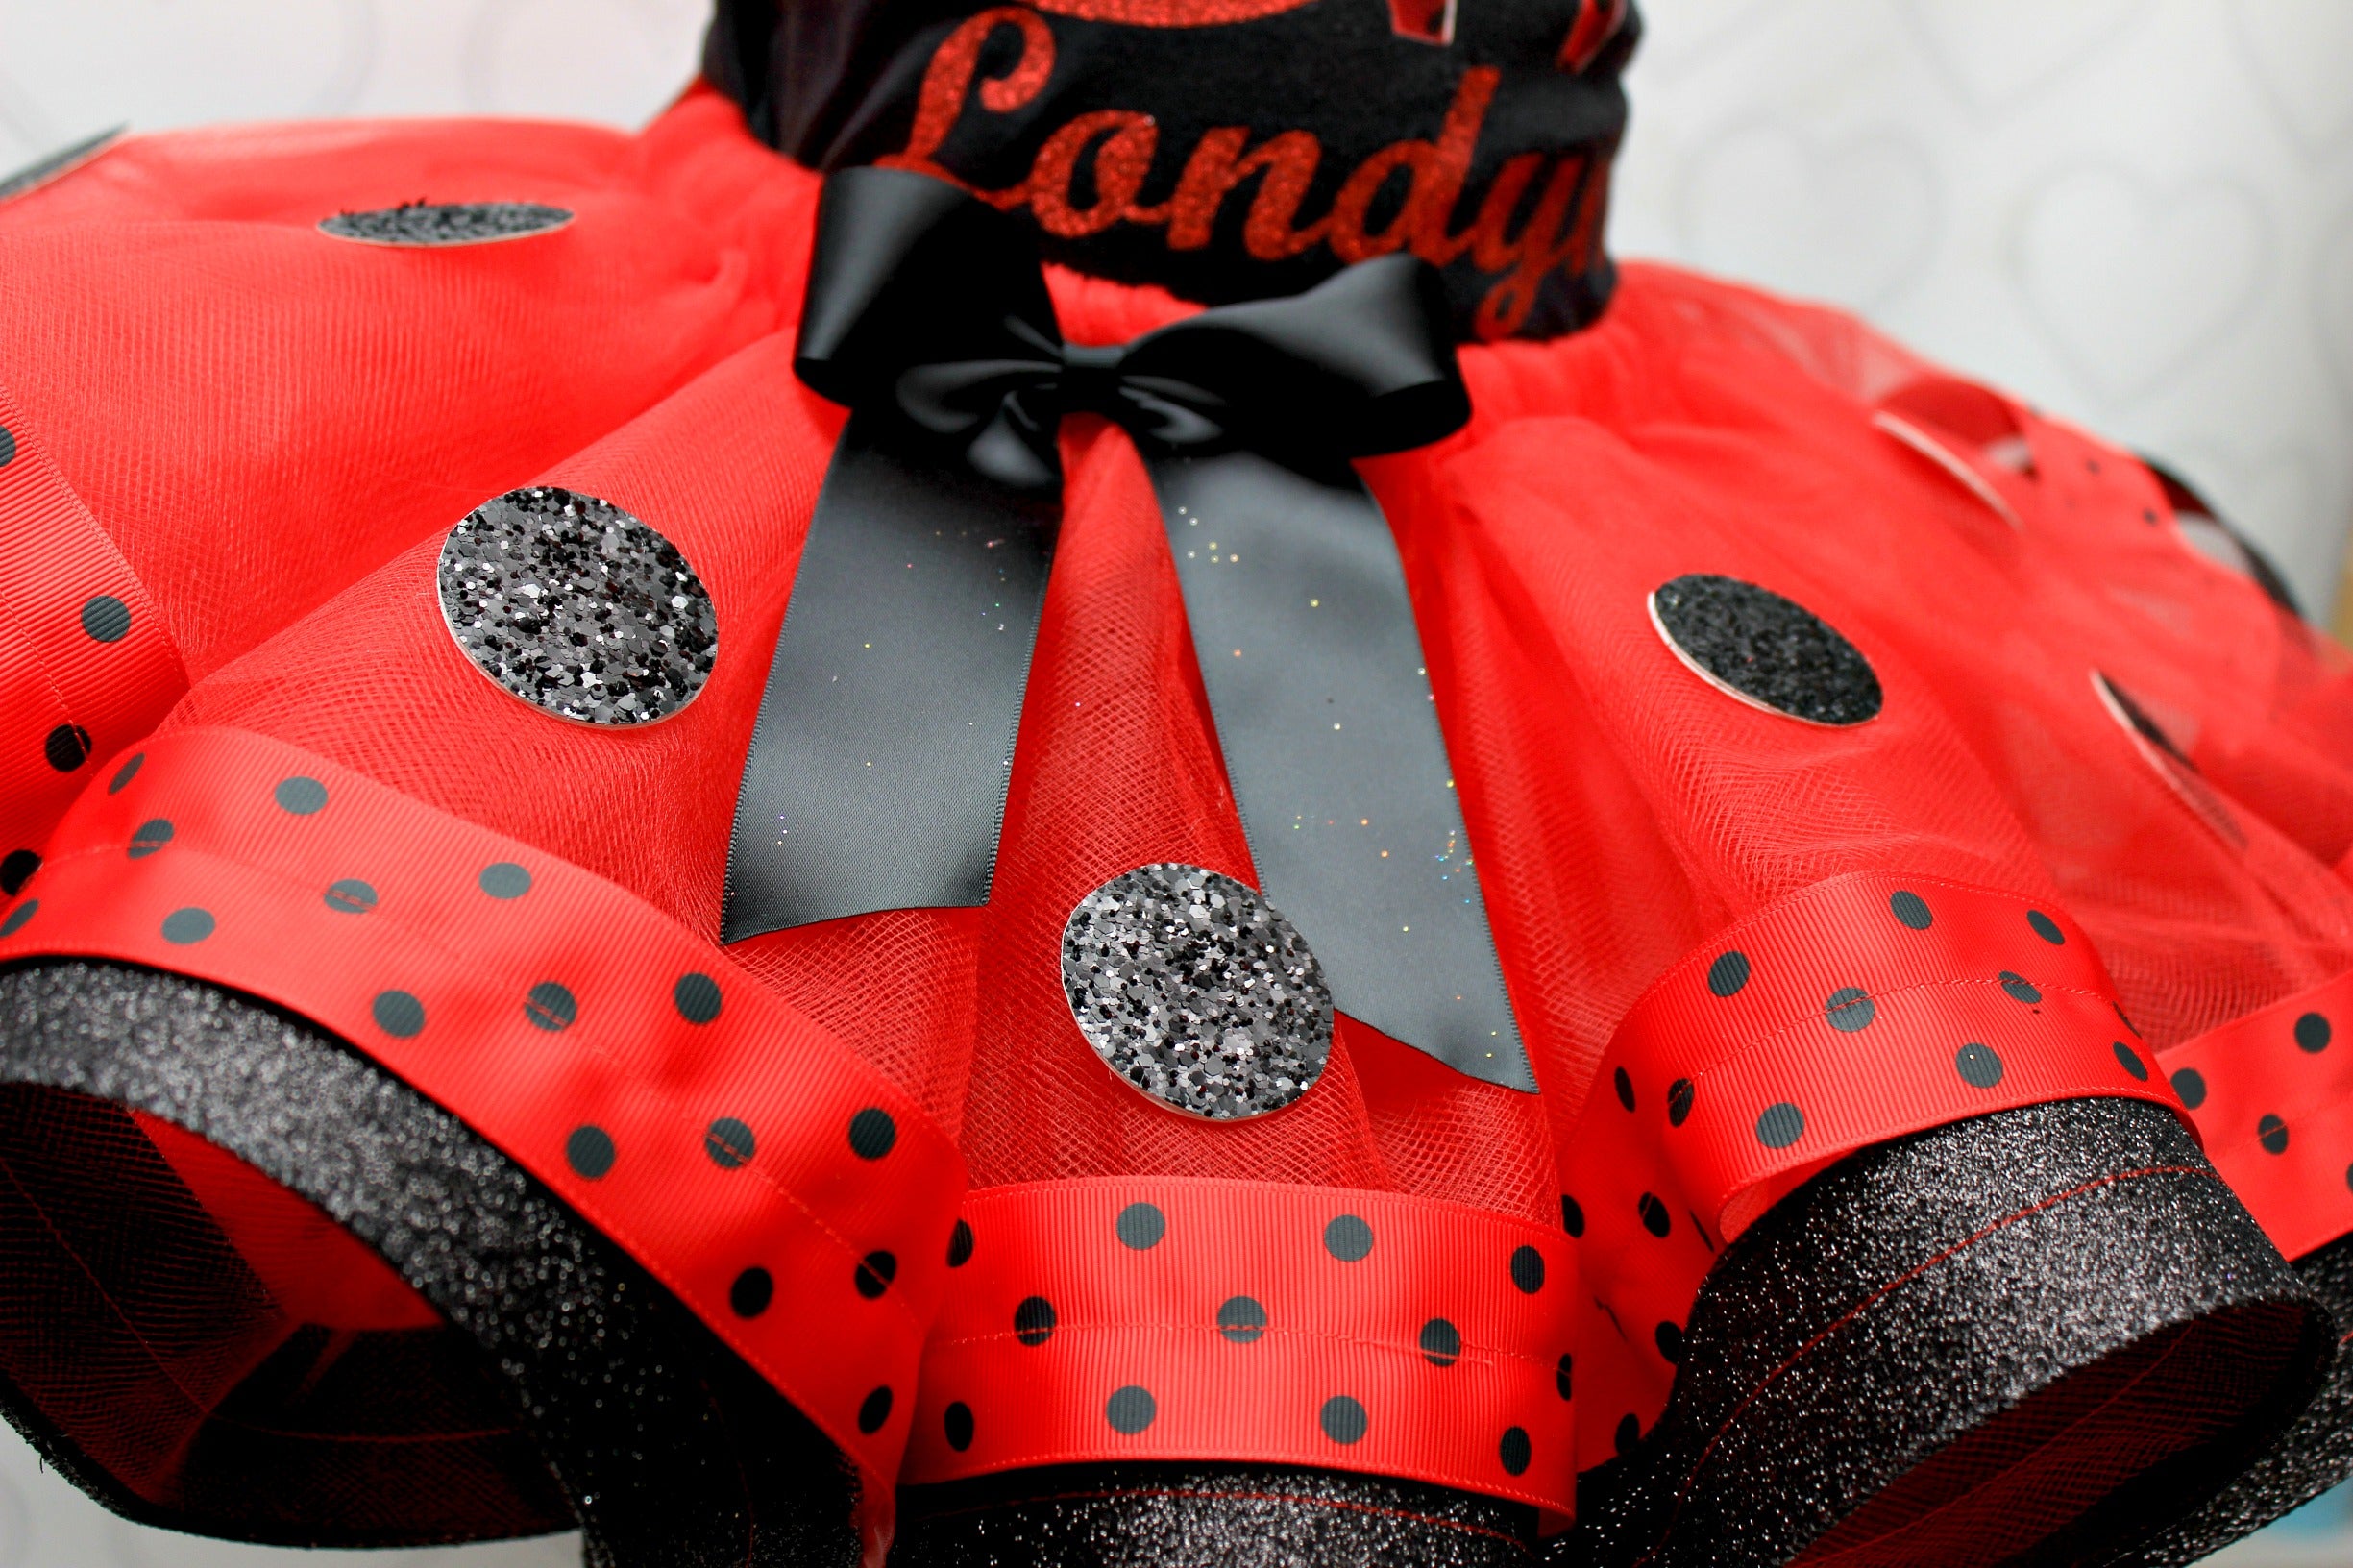 Miraculous Ladybug tutu set-Miraculous ladybug outfit-Miraculous ladybug dress